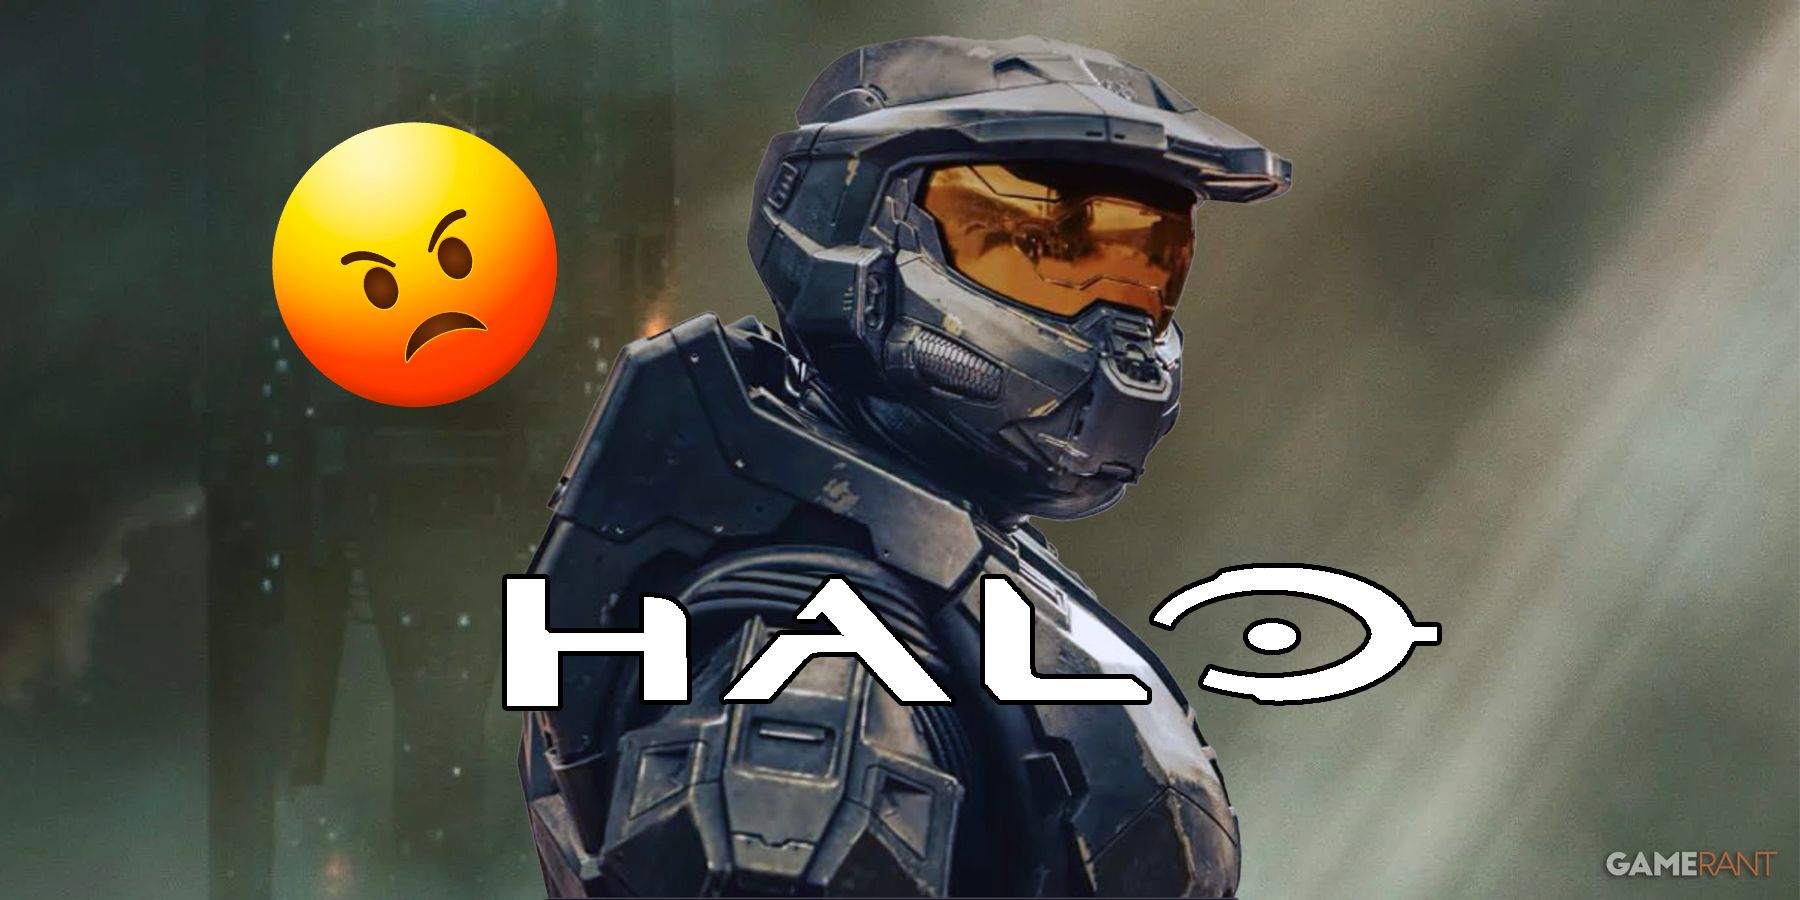 Halo Season 2 Poster Fixed Master Chief Helmet